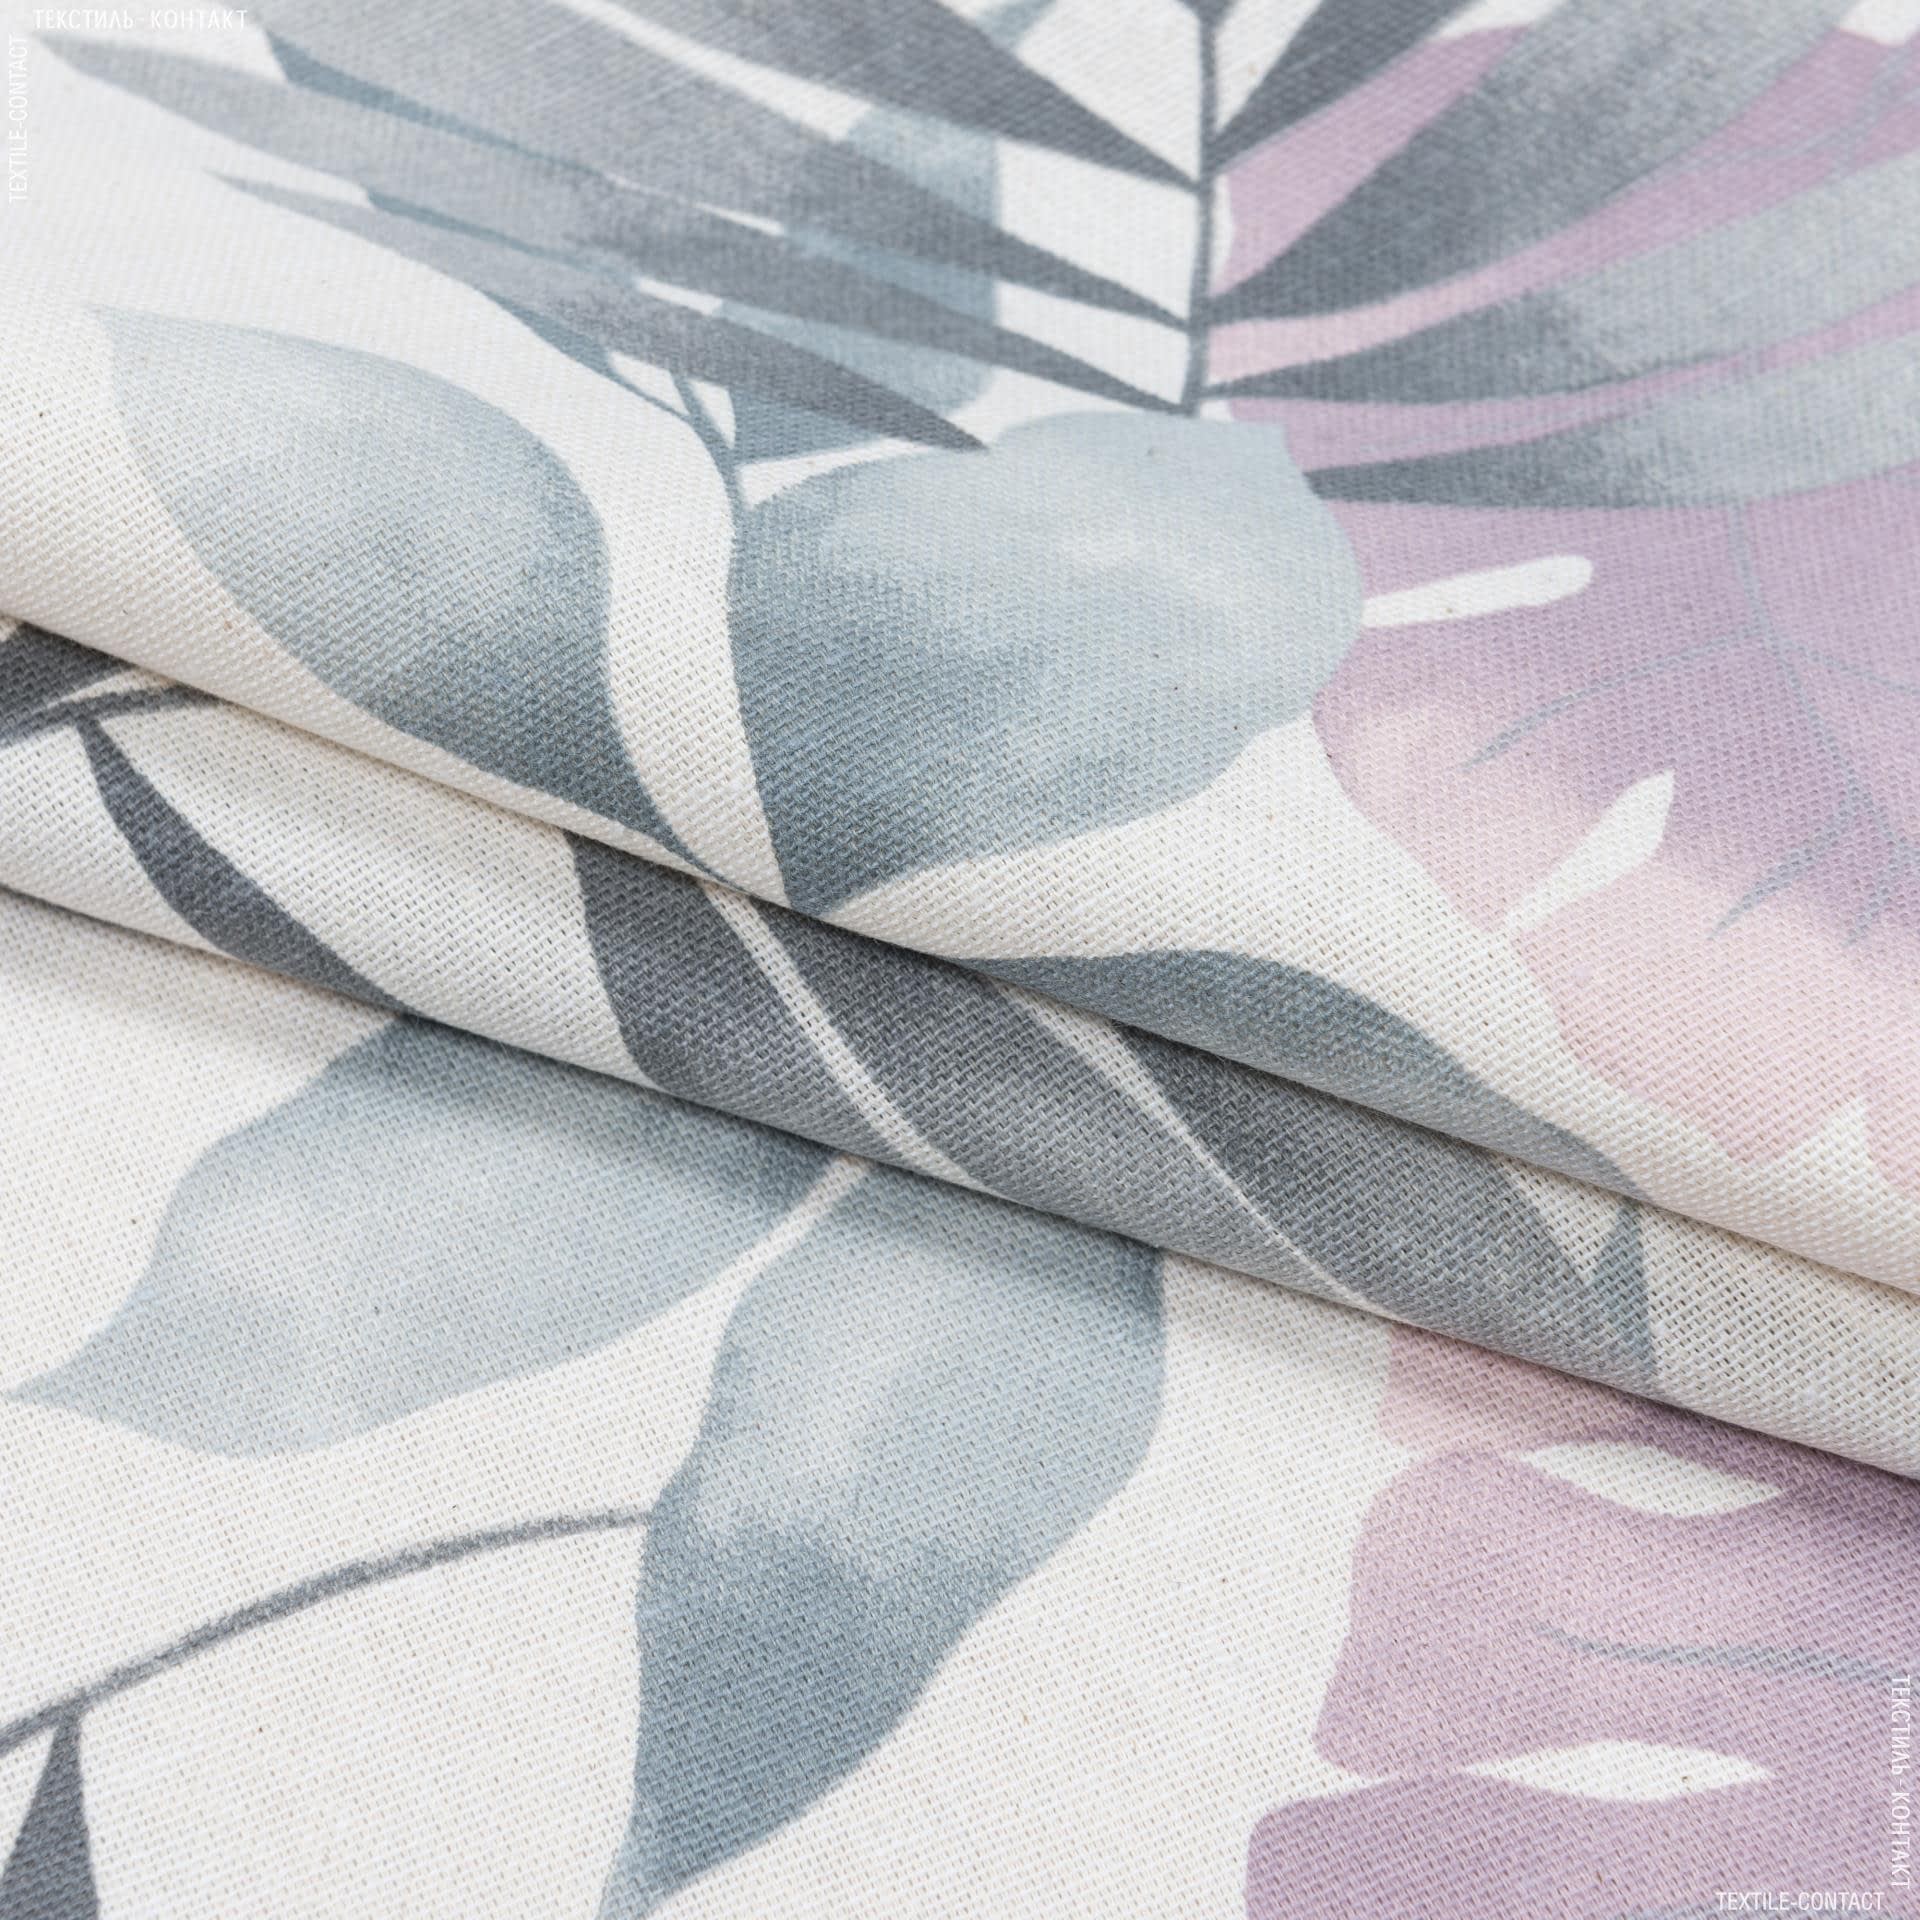 Ткани портьерные ткани - Декоративная ткань листья богемиан /bohemian  серый сизый